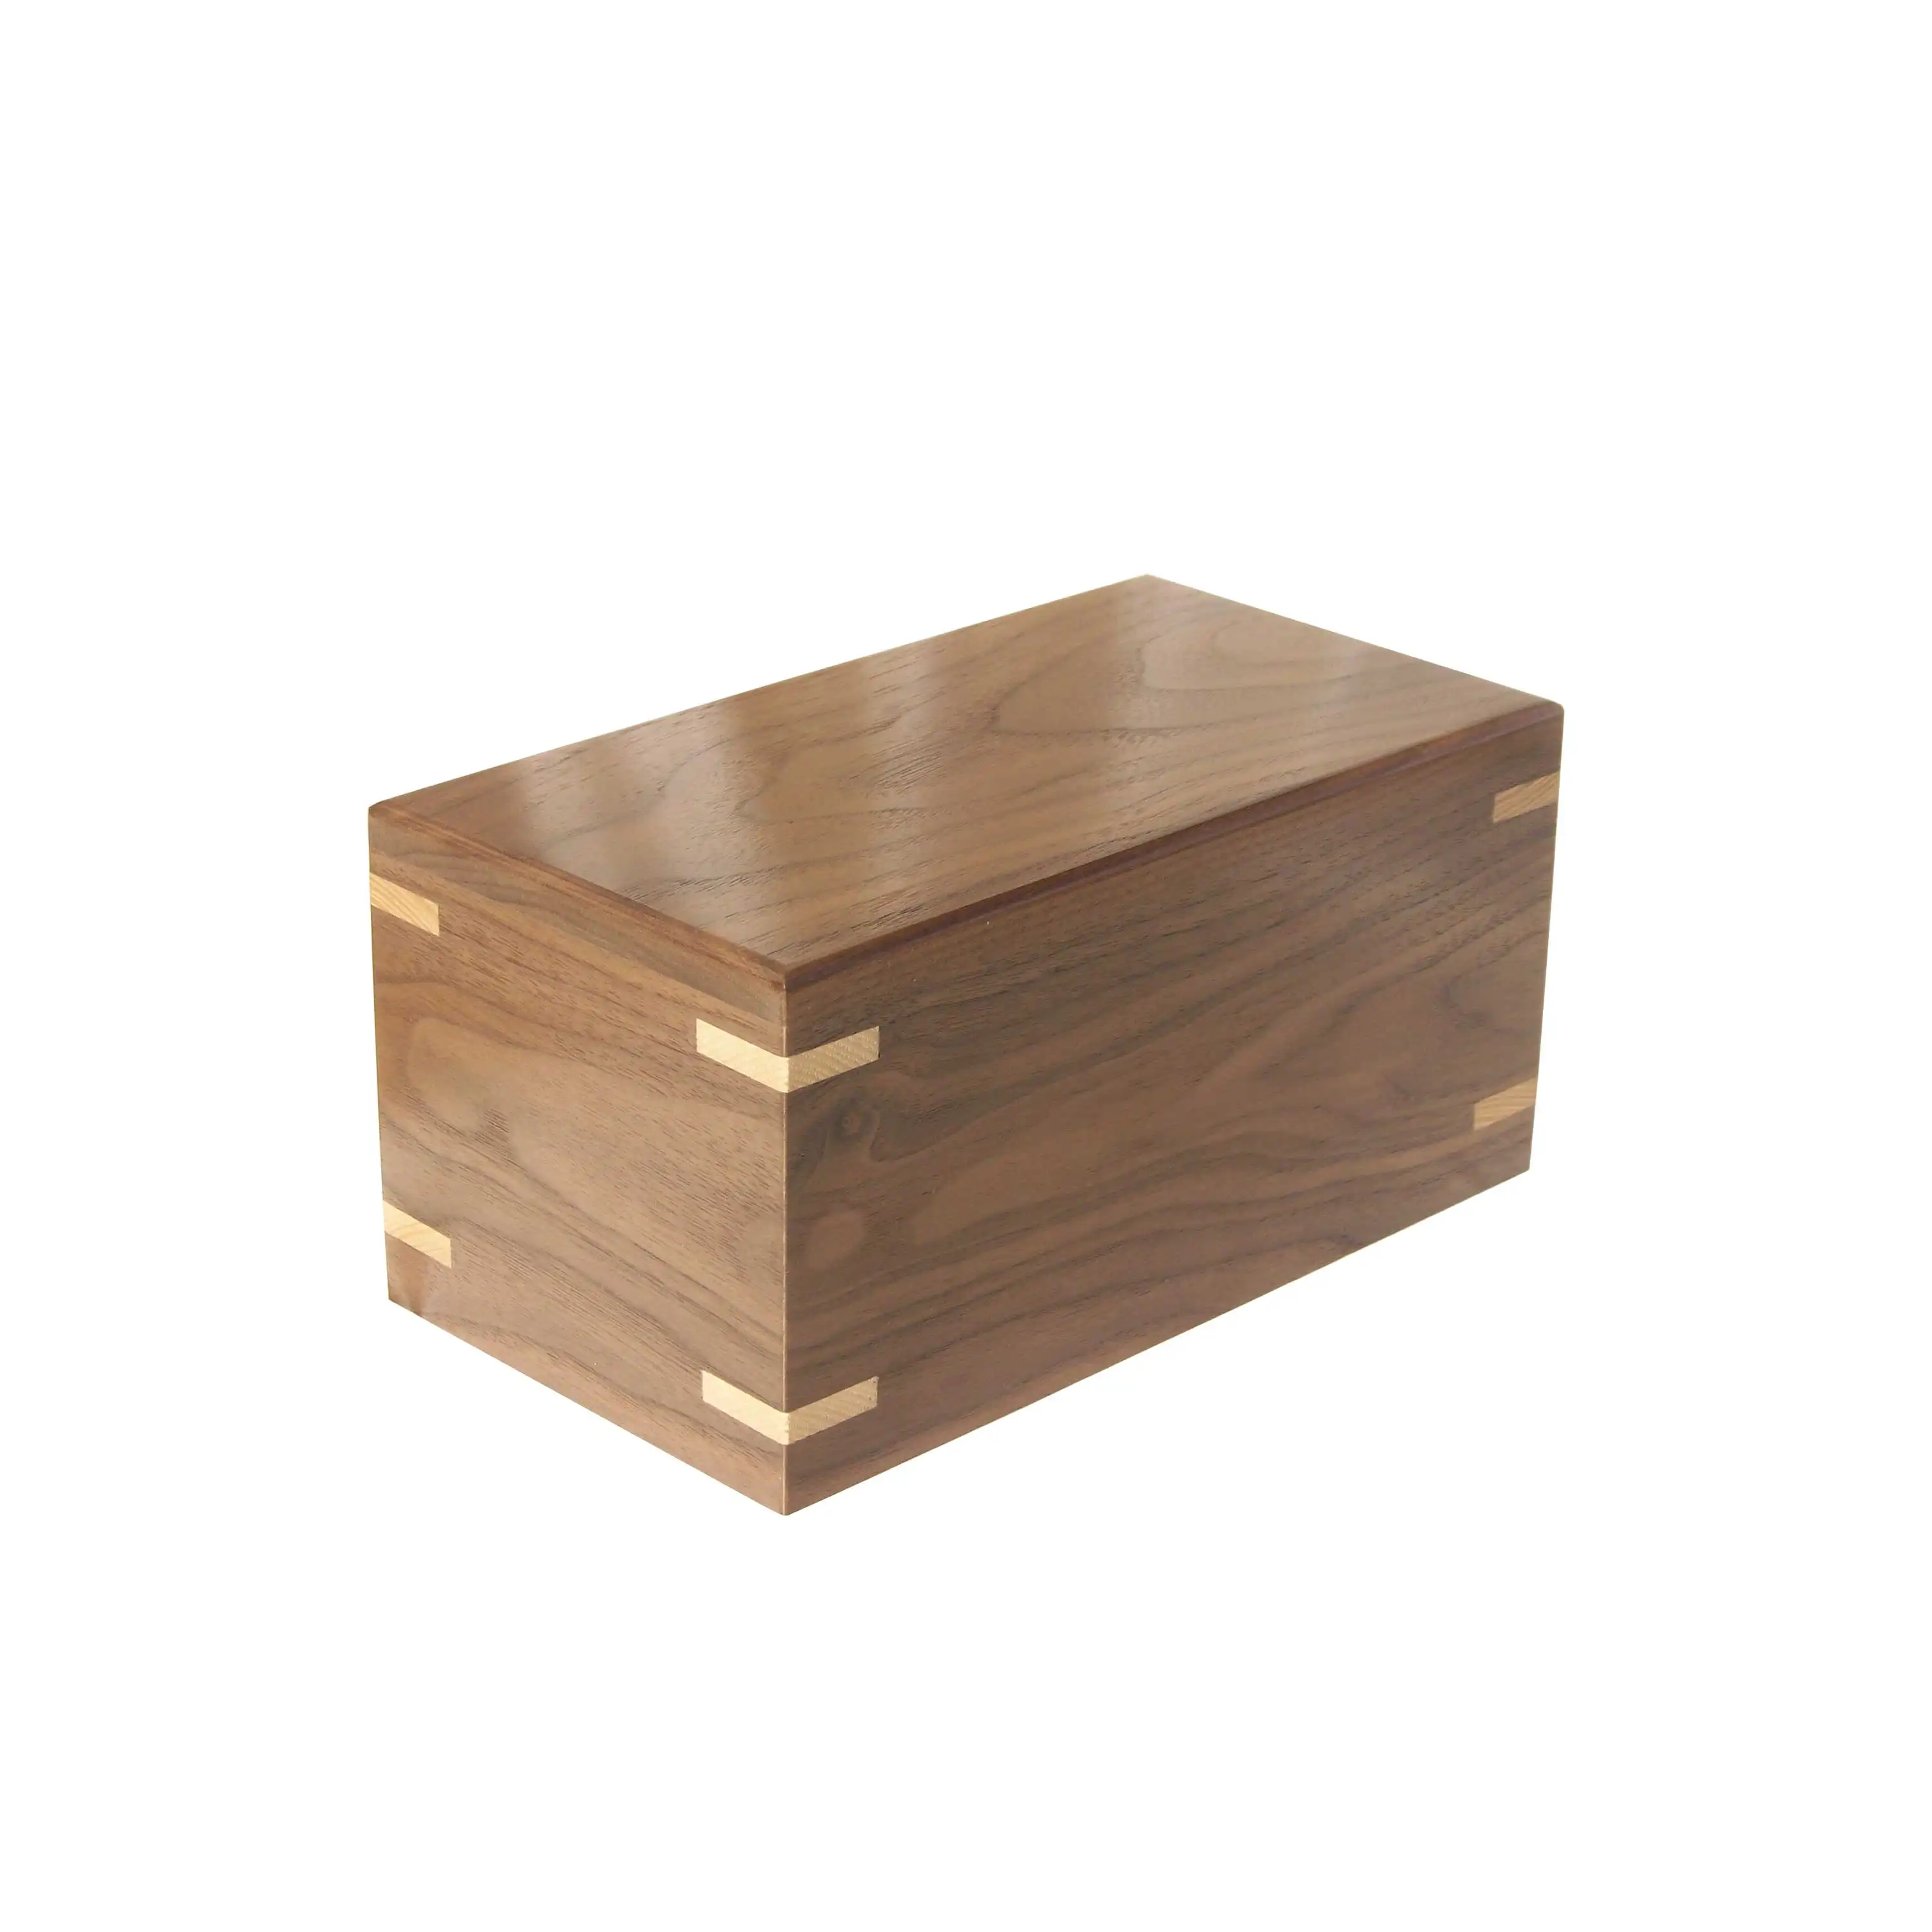 ブラスワールドインドによるトップダークポリッシュ人間の灰ボックスにフォトフレーム付きの最新デザインの木製火葬壷